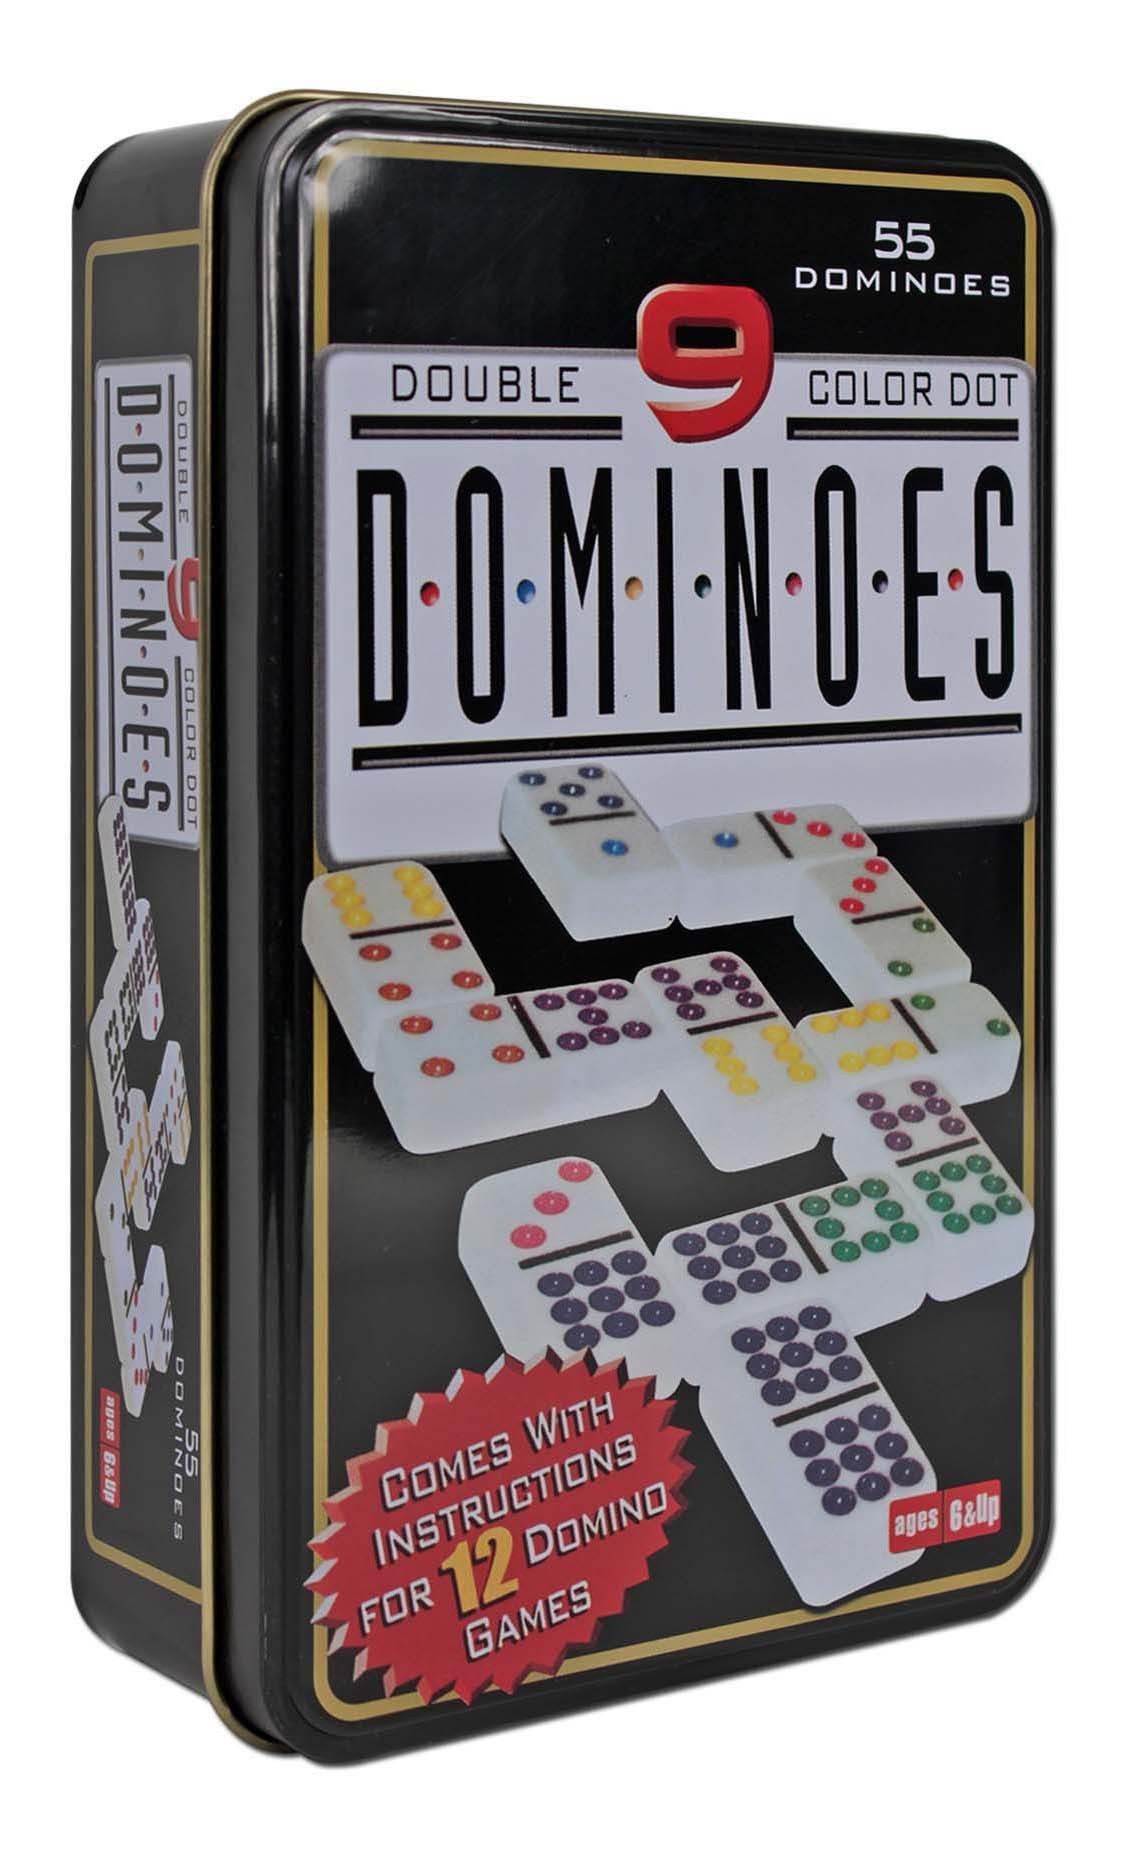 Imagen Domino Doble 9 Colores Juego De Mesa 2